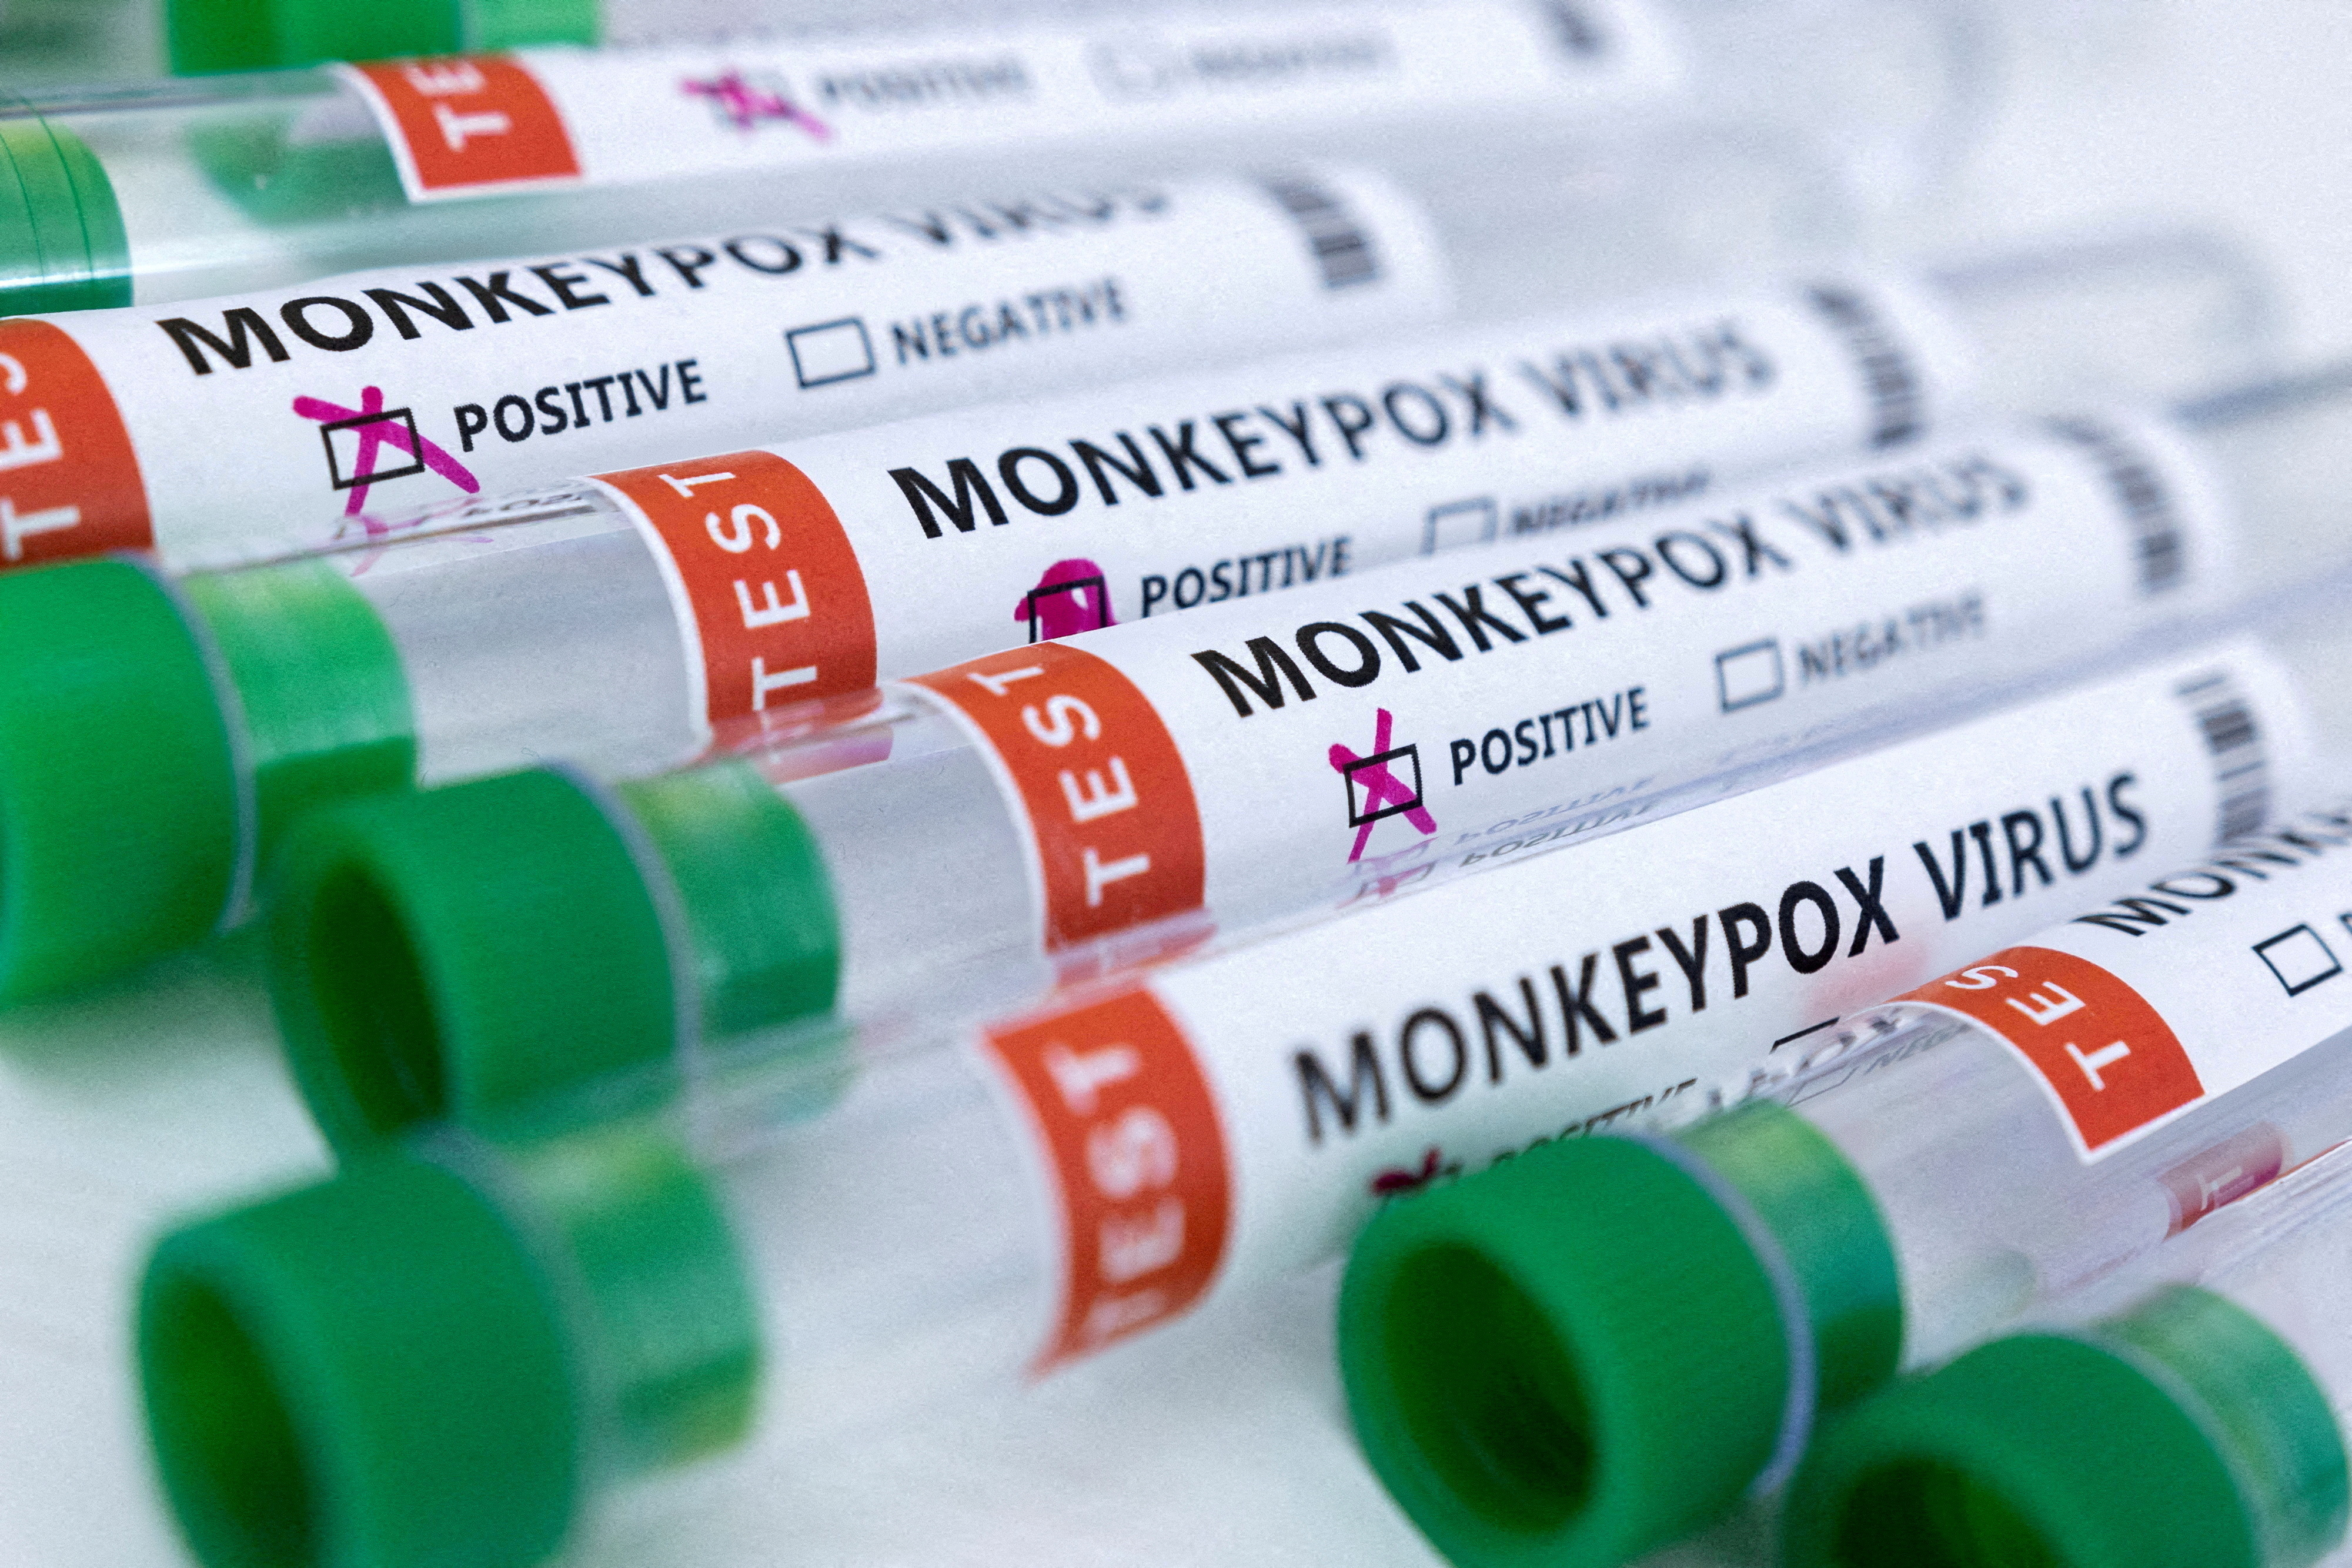 California Gov. Gavin Newsom Declares State of Emergency Over Monkeypox